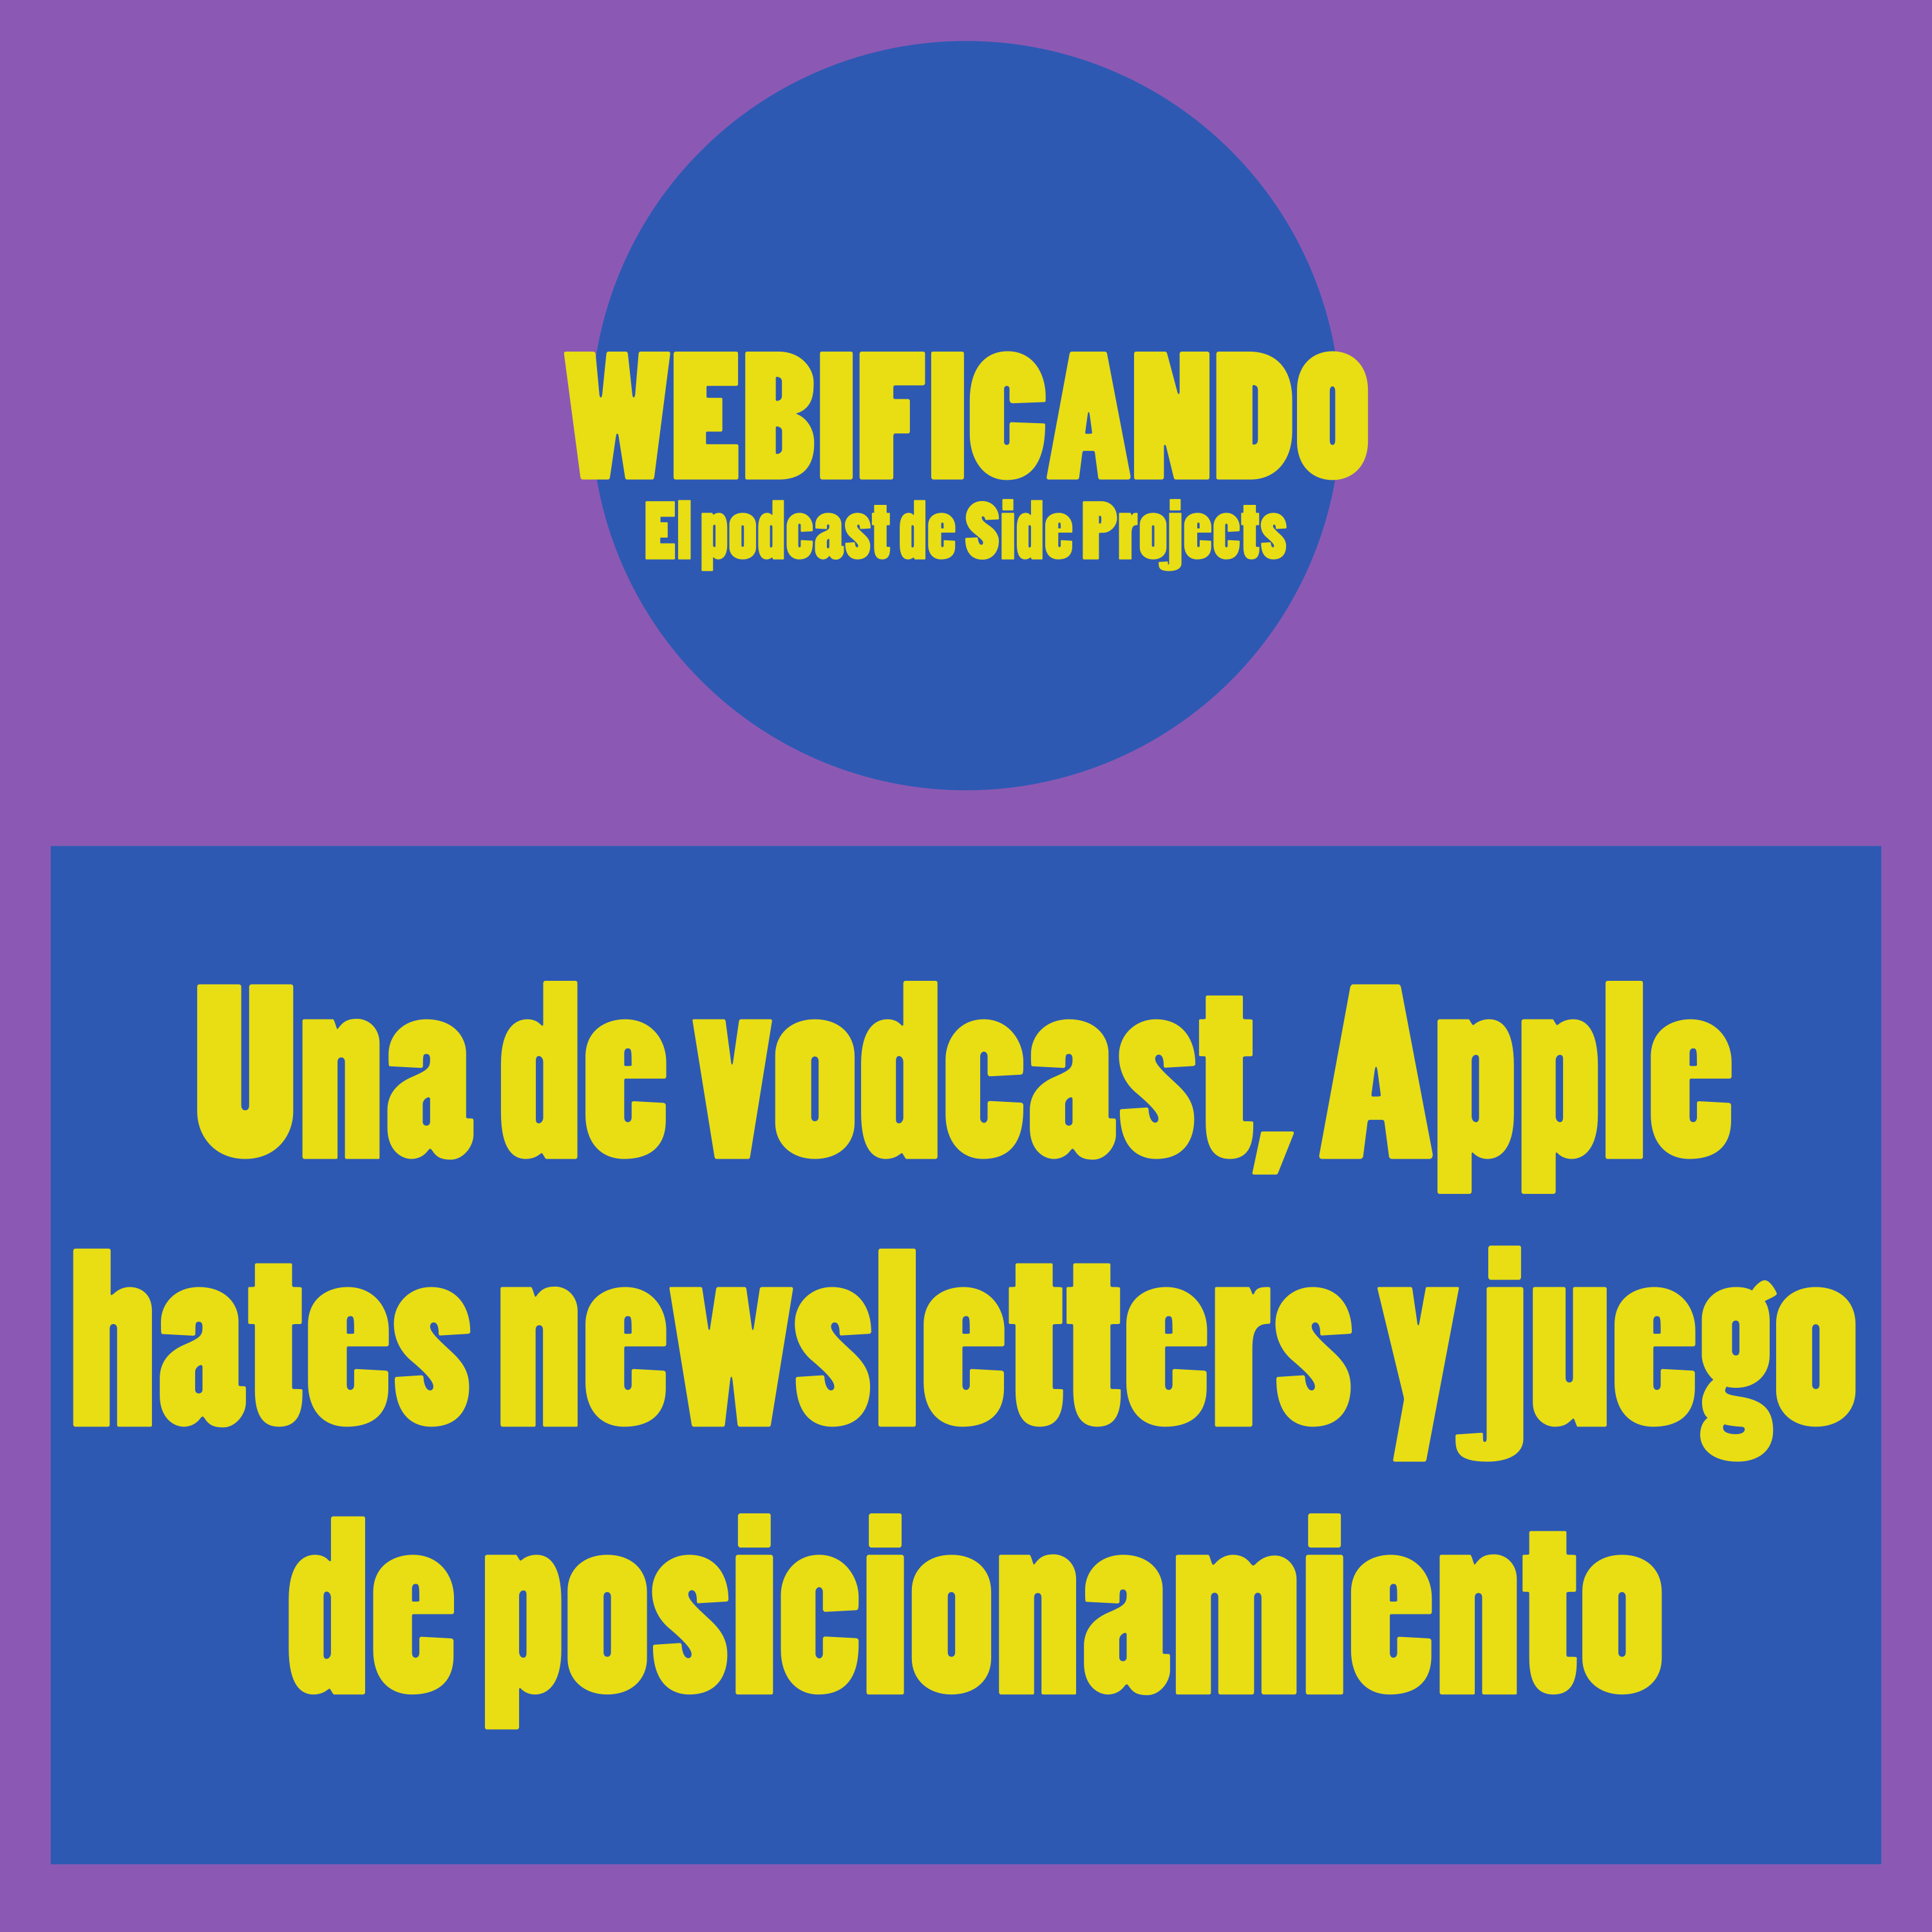 Una de vodcast, apple hates newsletters y juego de posicionamiento